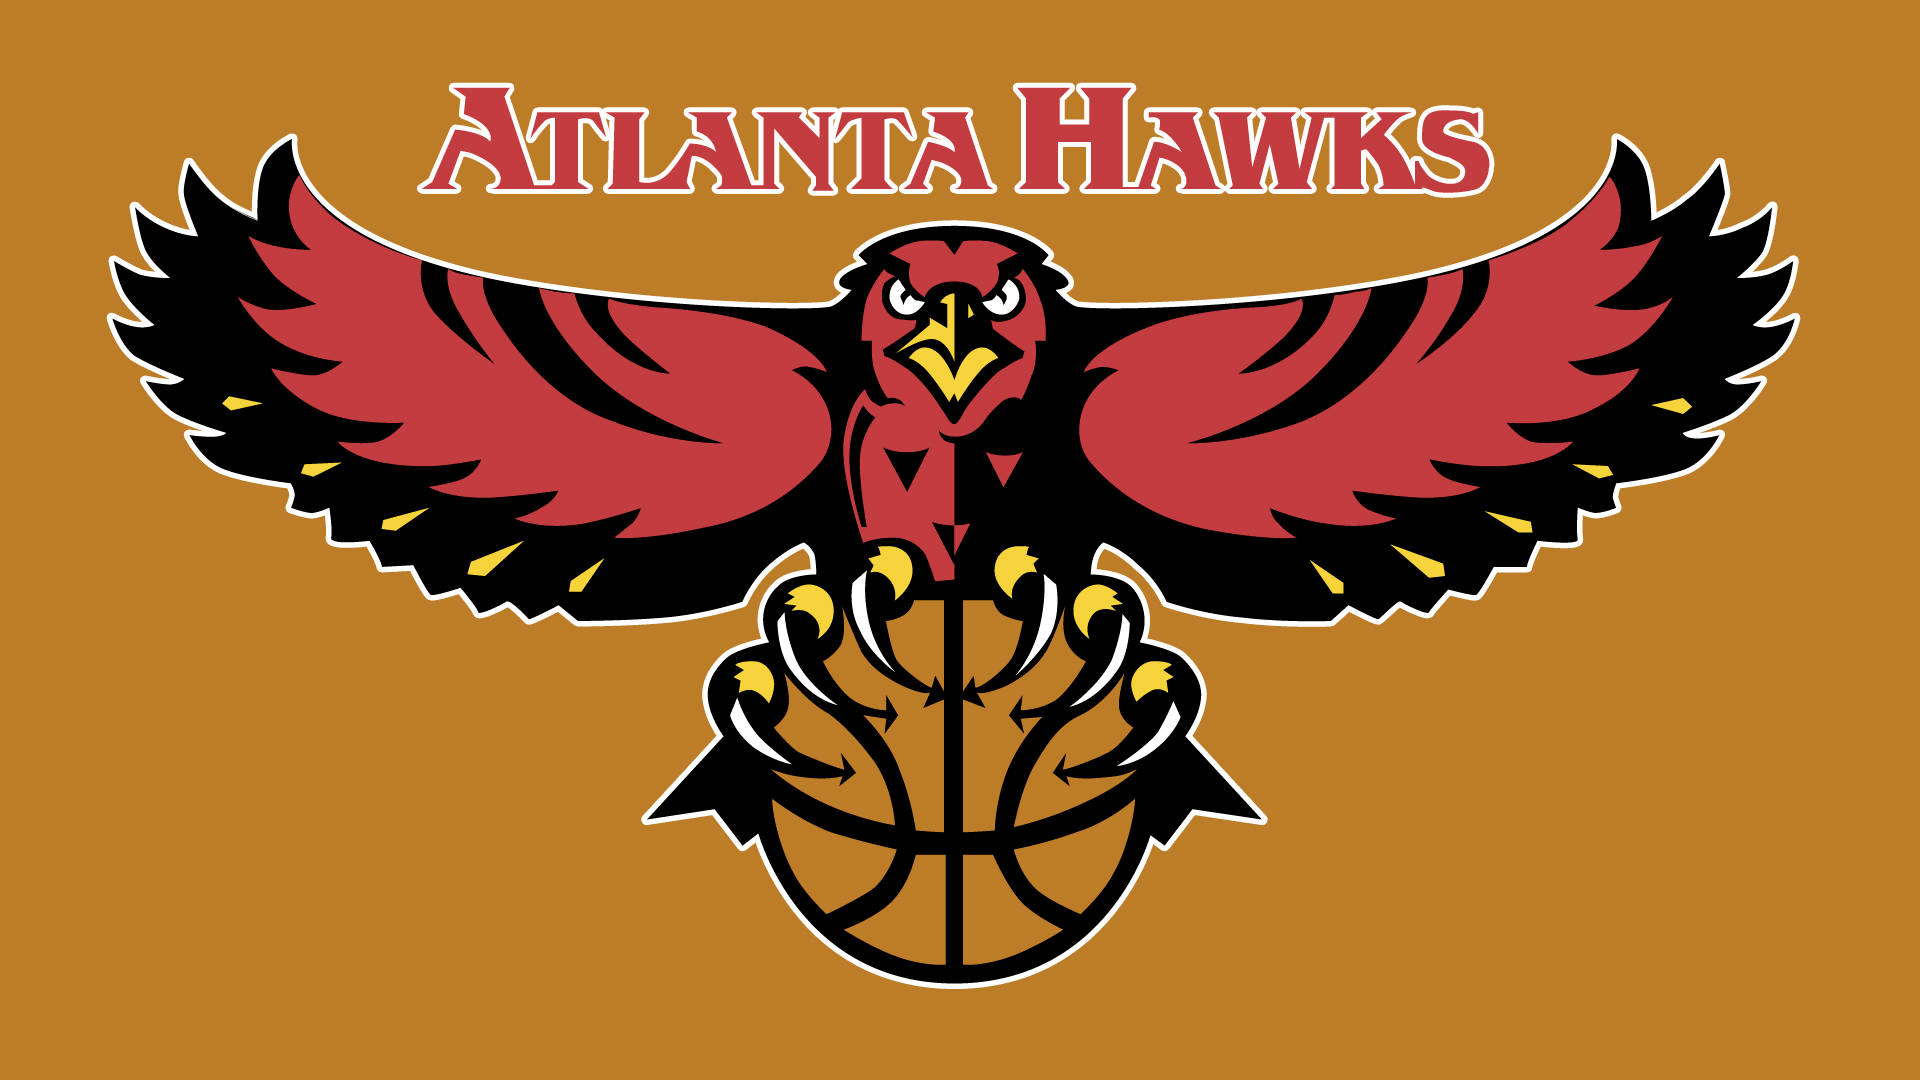 Immagini Degli Atlanta Hawks